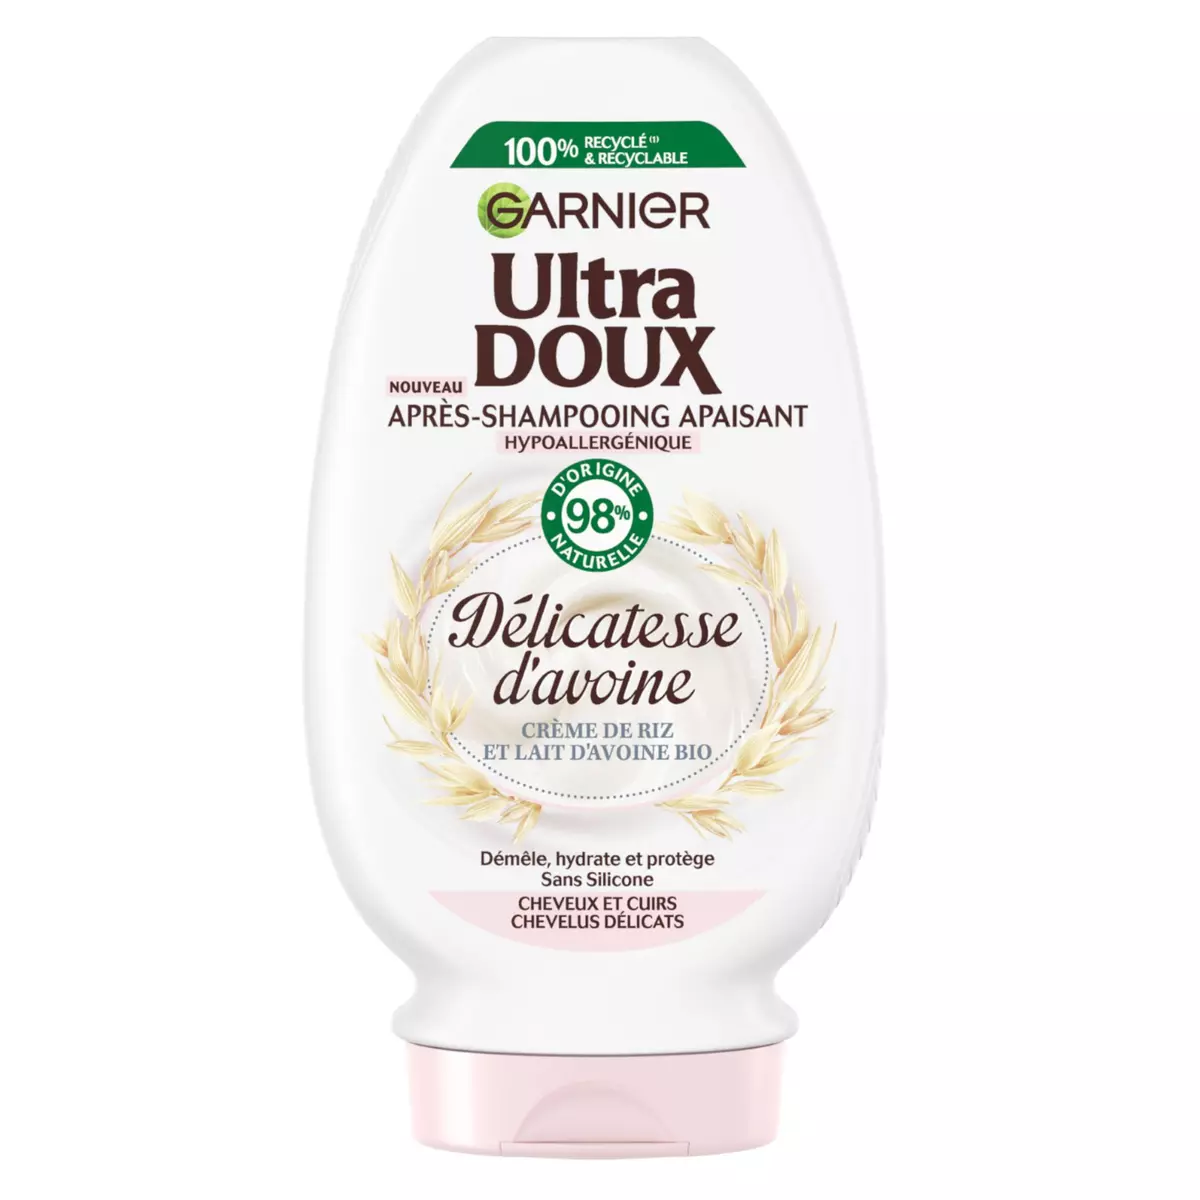 ULTRA DOUX Après-shampooing apaisant crème de riz et lait d'avoine bio cheveux délicats 250ml